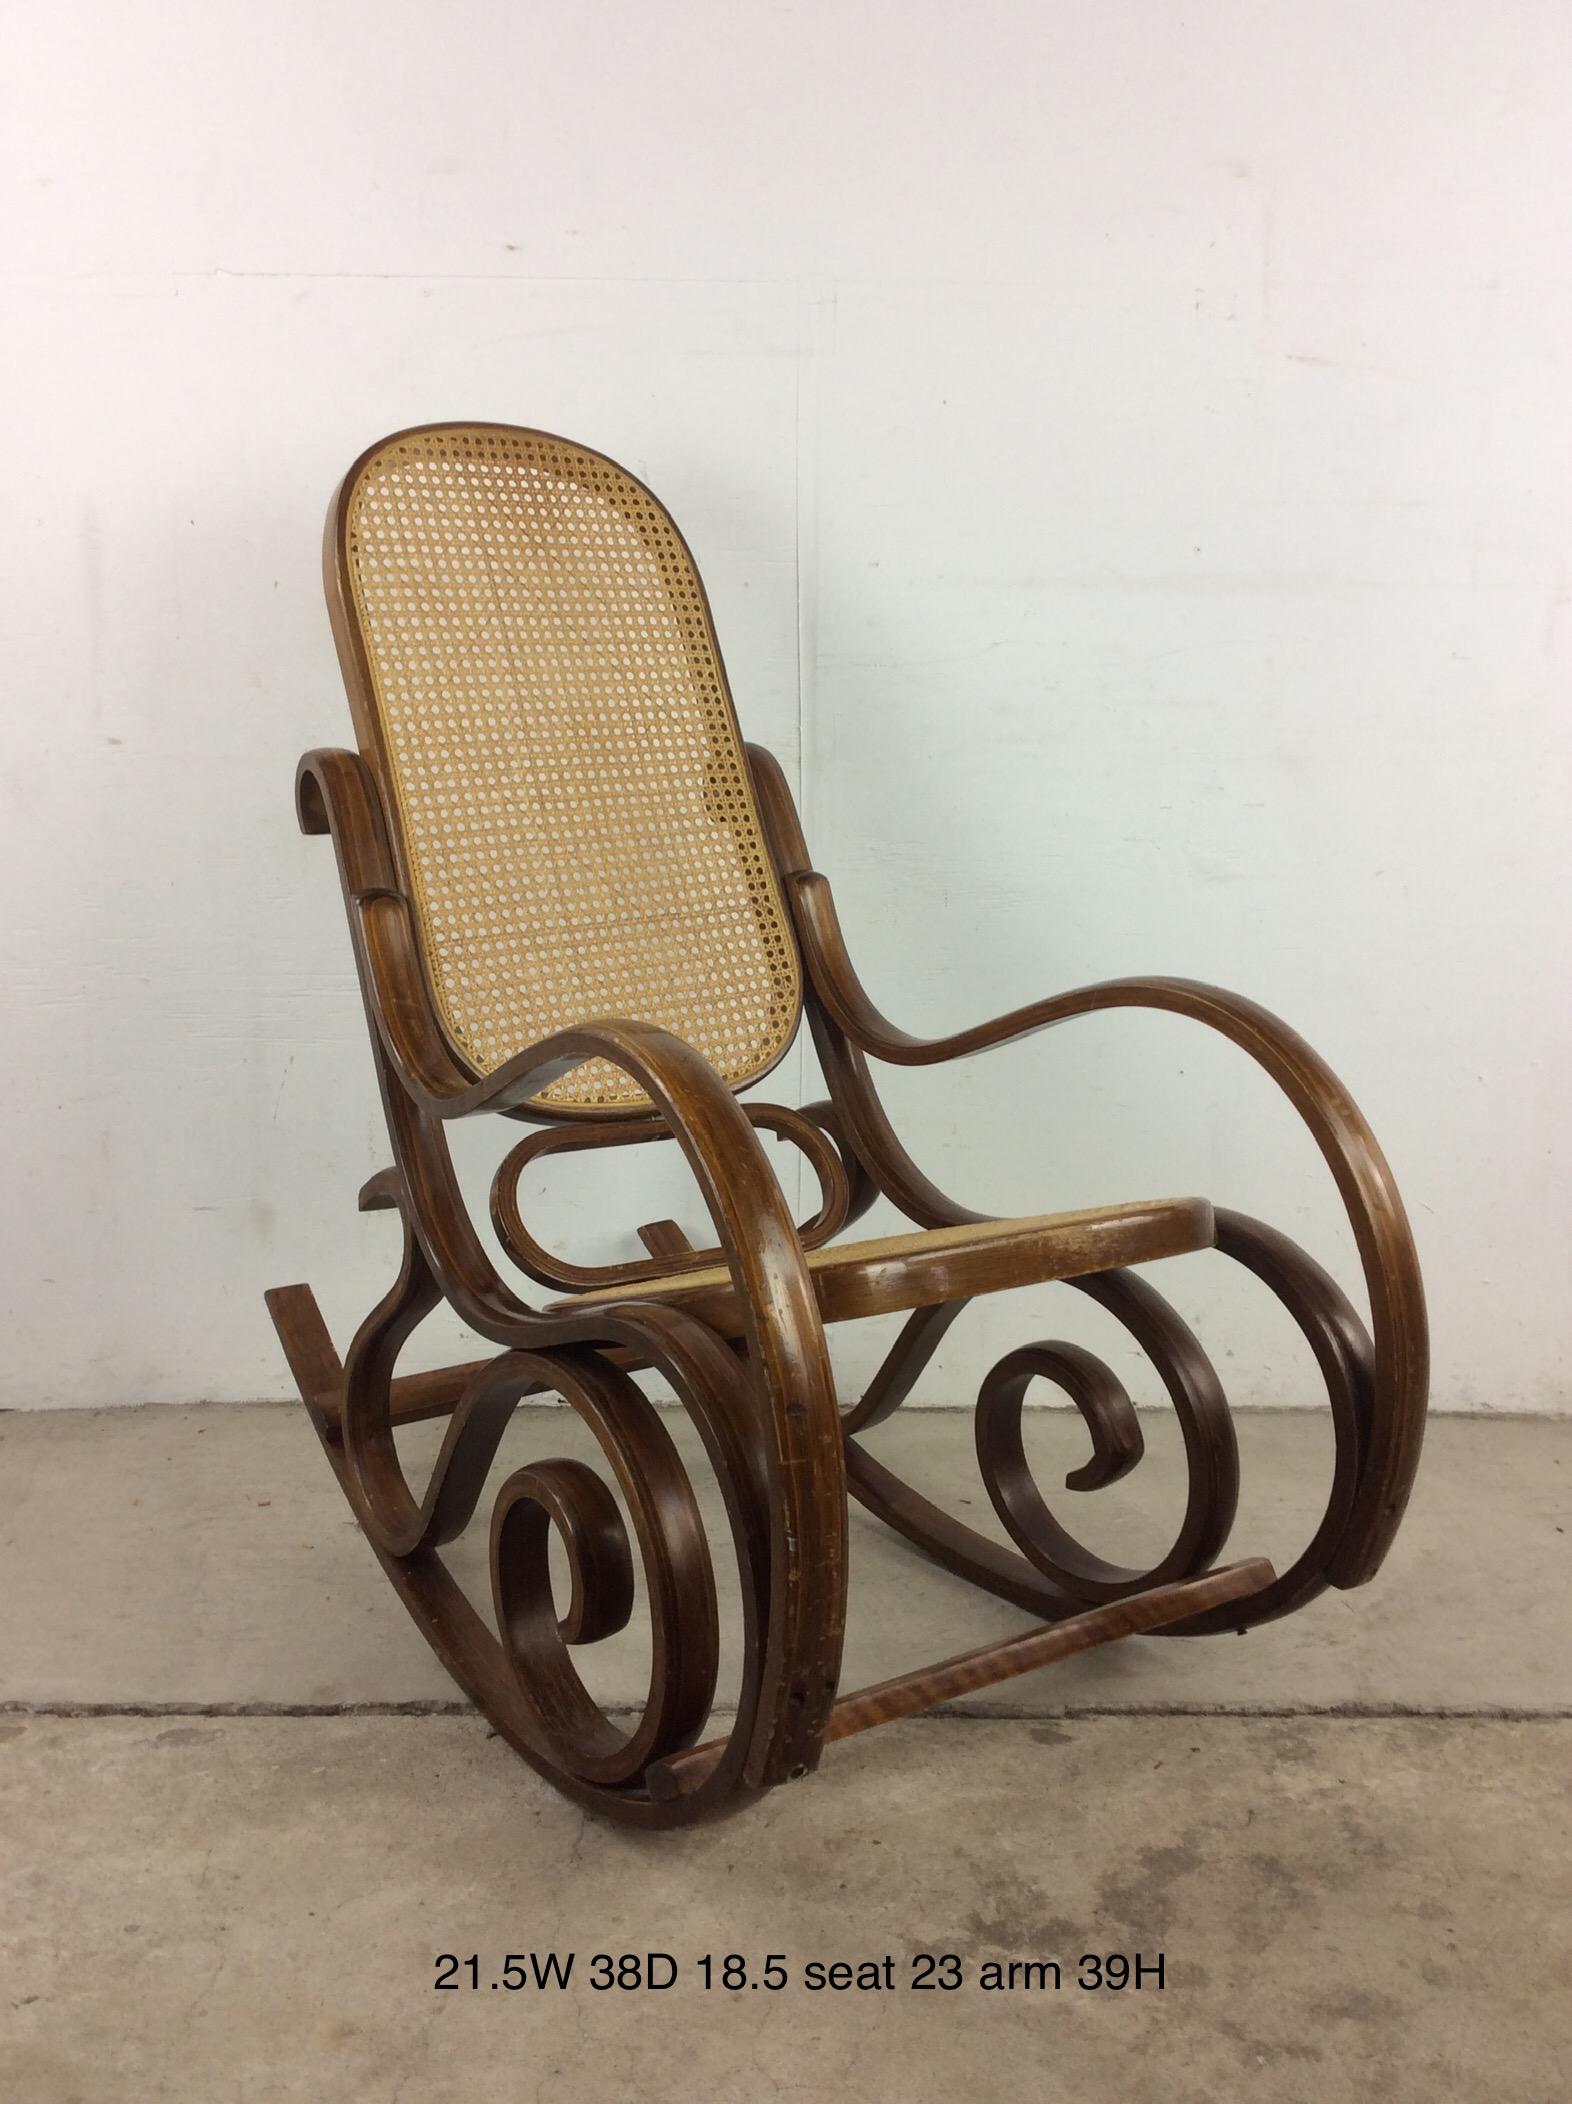 Diese Vintage-Wippe im Stil von Thonet zeichnet sich durch ein einzigartiges Bugholzgestell mit Sitz und Rückenlehne aus.u2028u2028Cafe-Stuhl und Ottomane sind separat erhältlich.

Abmessungen: 21.5w 38d 39h 23h 18.5sh

Zustand: Die Oberfläche ist